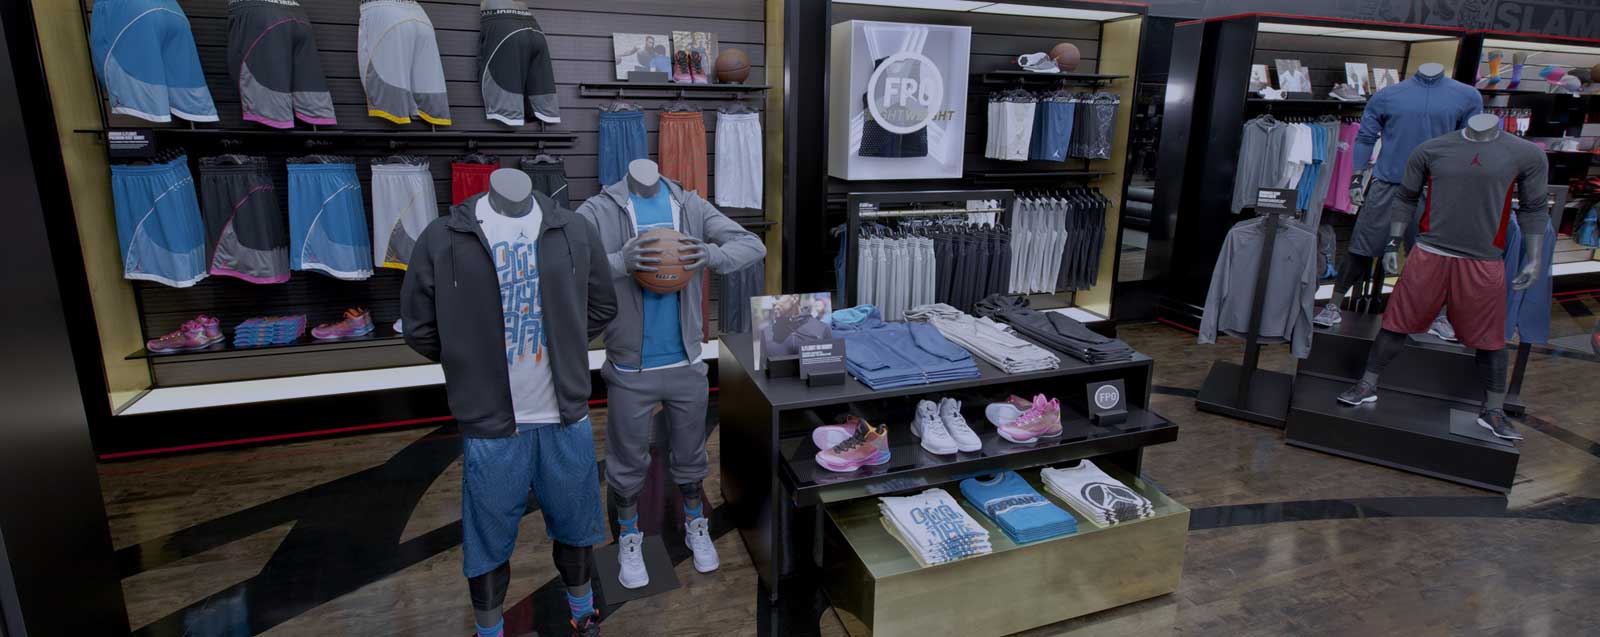 Nike cerca personale per il nuovo store di Settimo Torinese - Quotidiano Piemontese